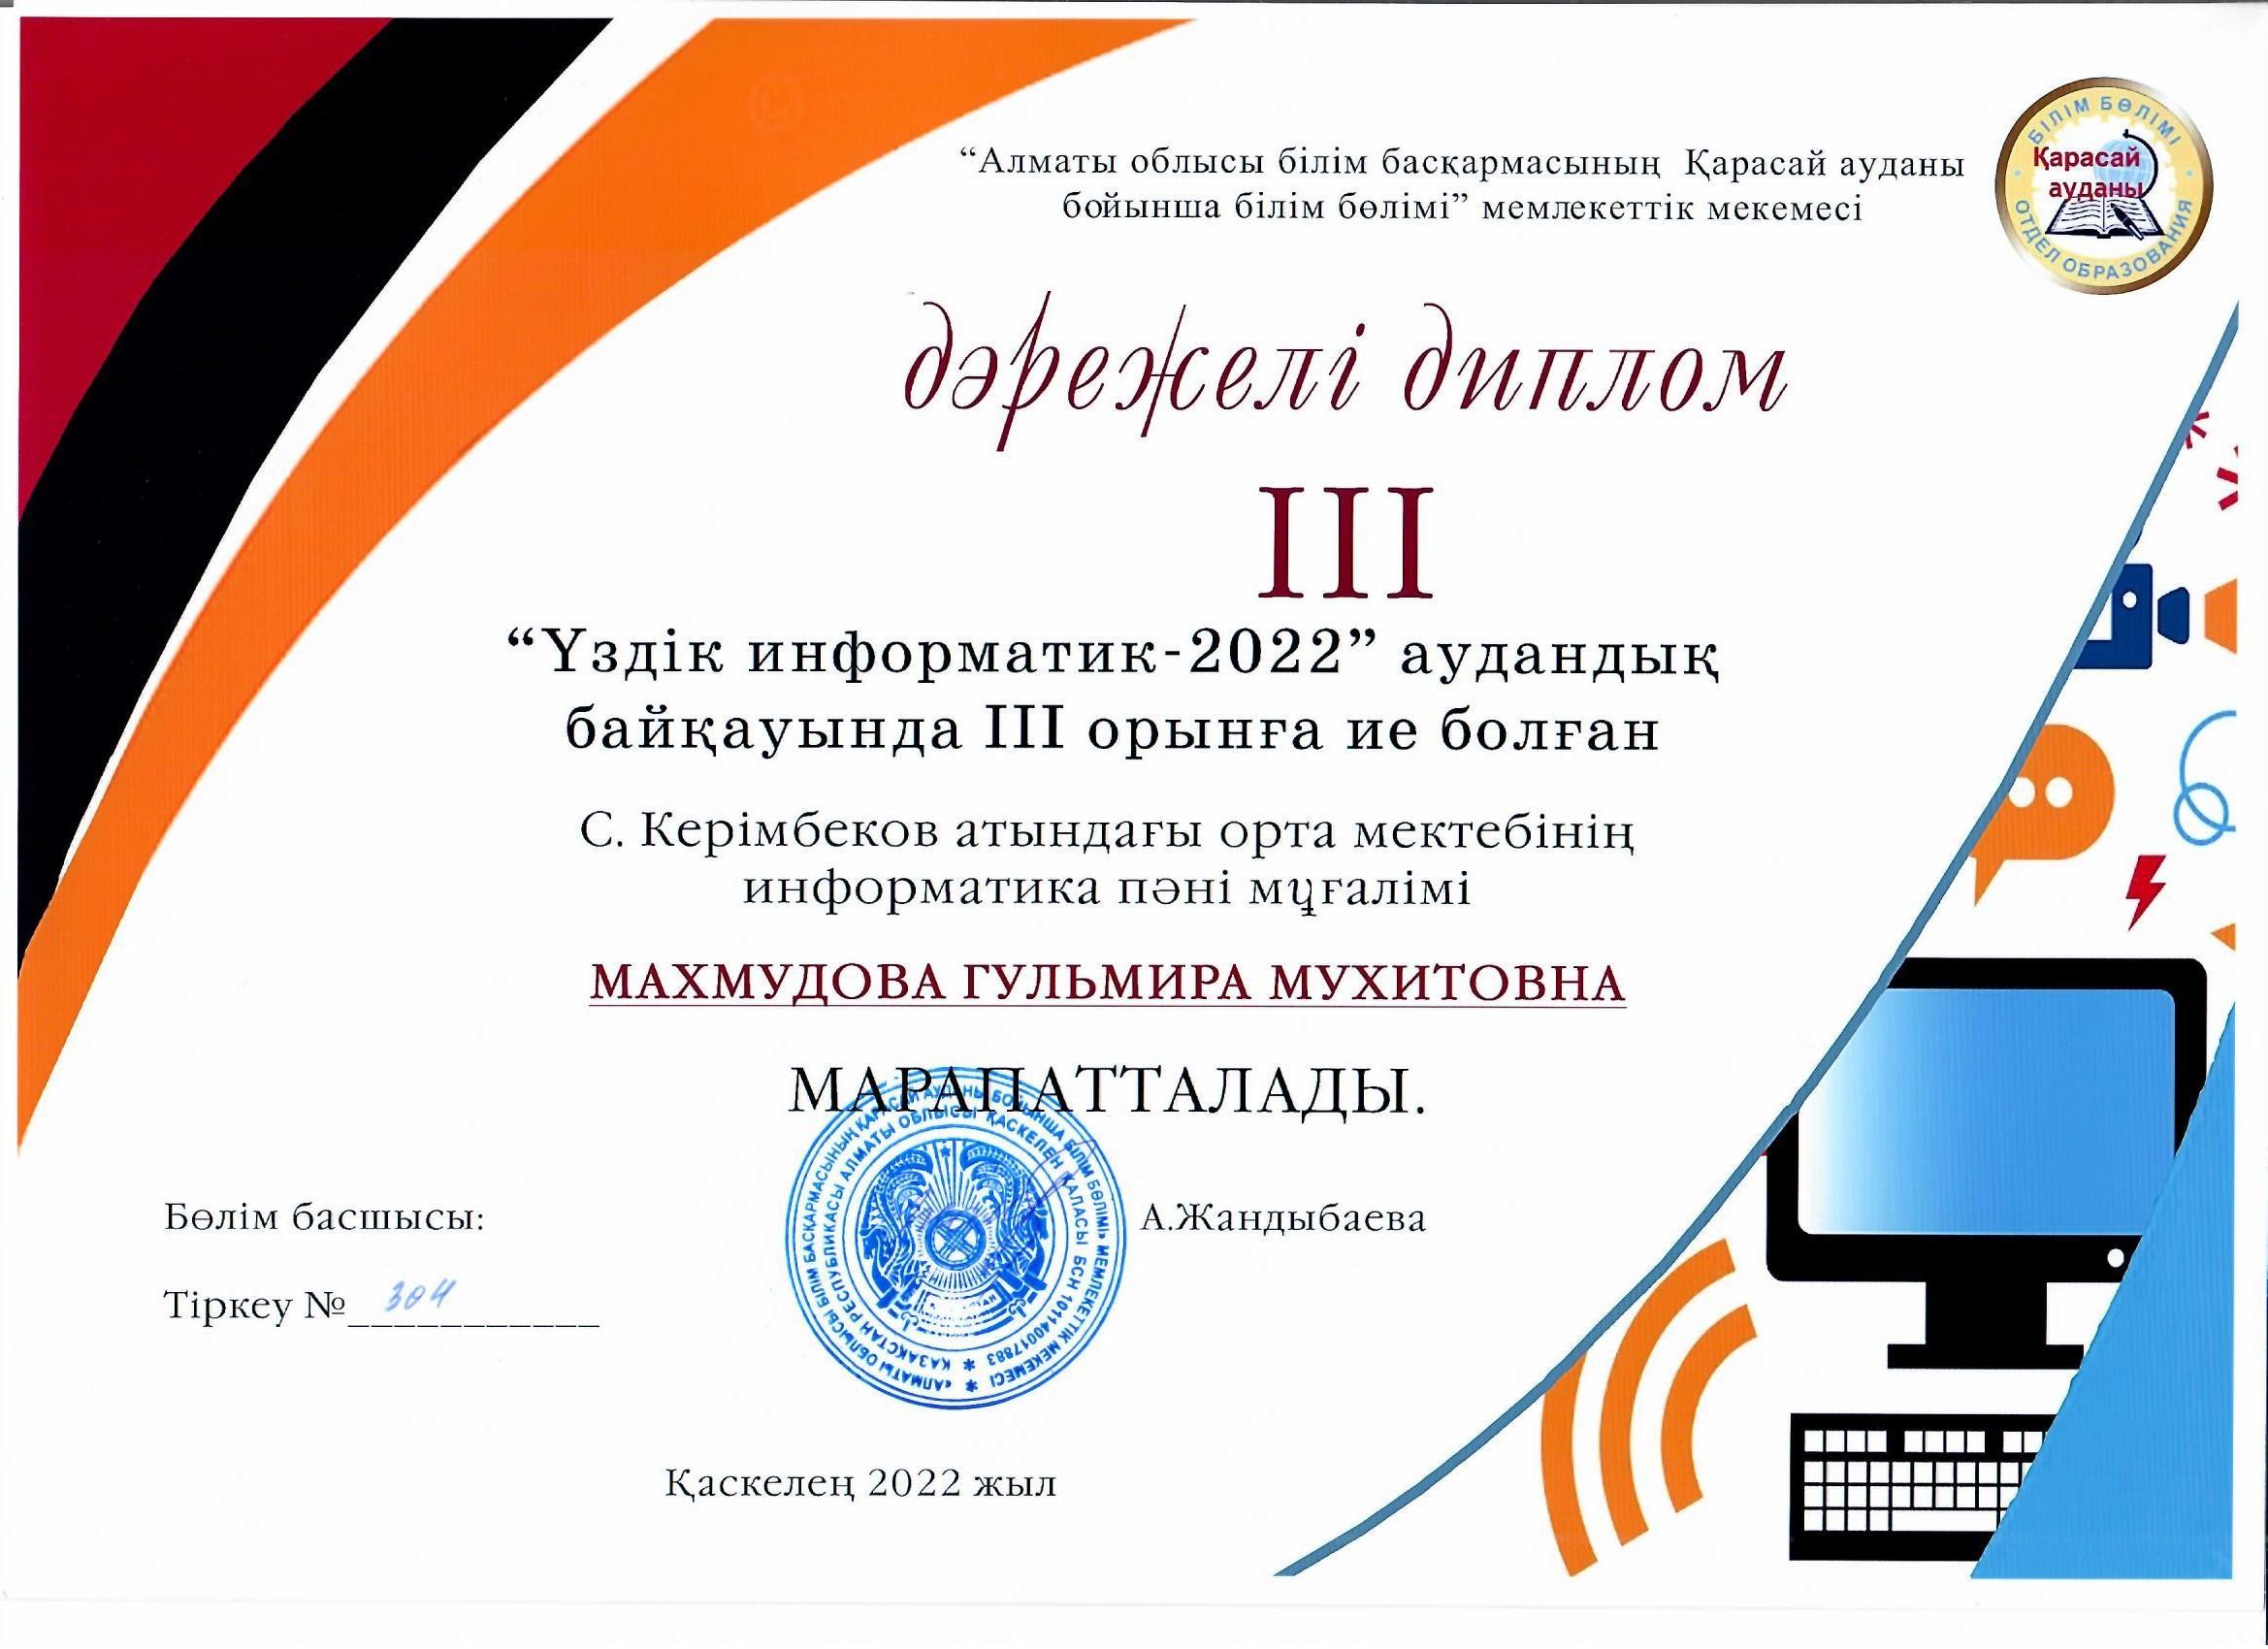 "Үздік Информатик-2022" байқау, "ІІІ дәрежелі Диплом", Махмудова Гульмира Мухитовна